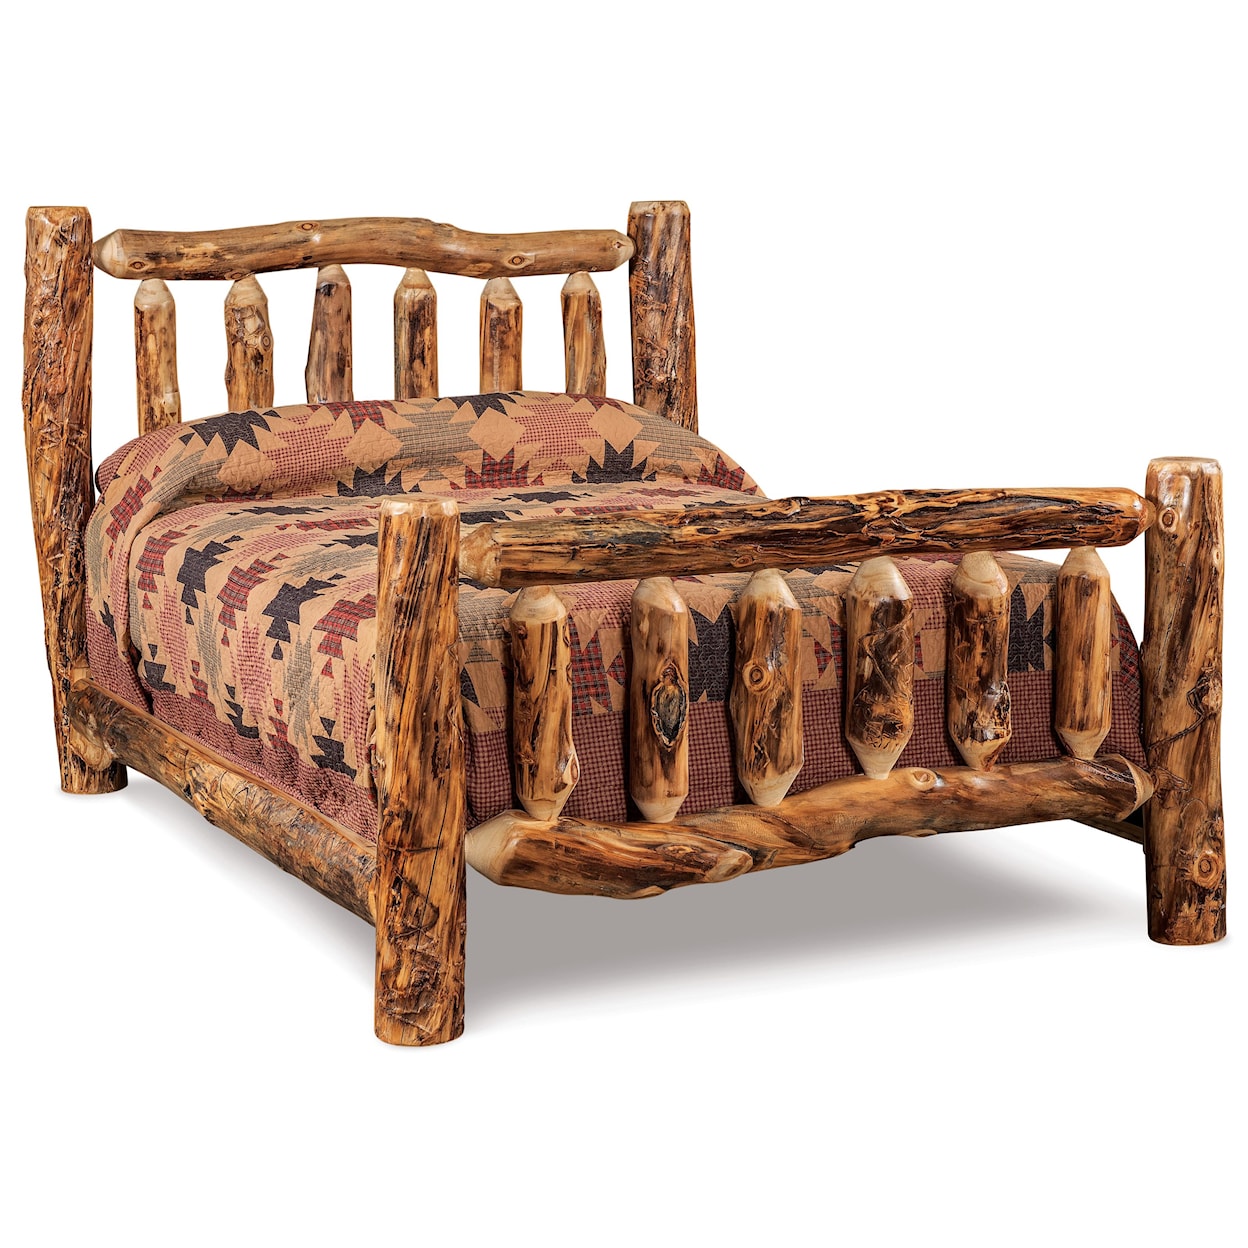 Fireside Log Furniture Log Bedroom King Log Bed